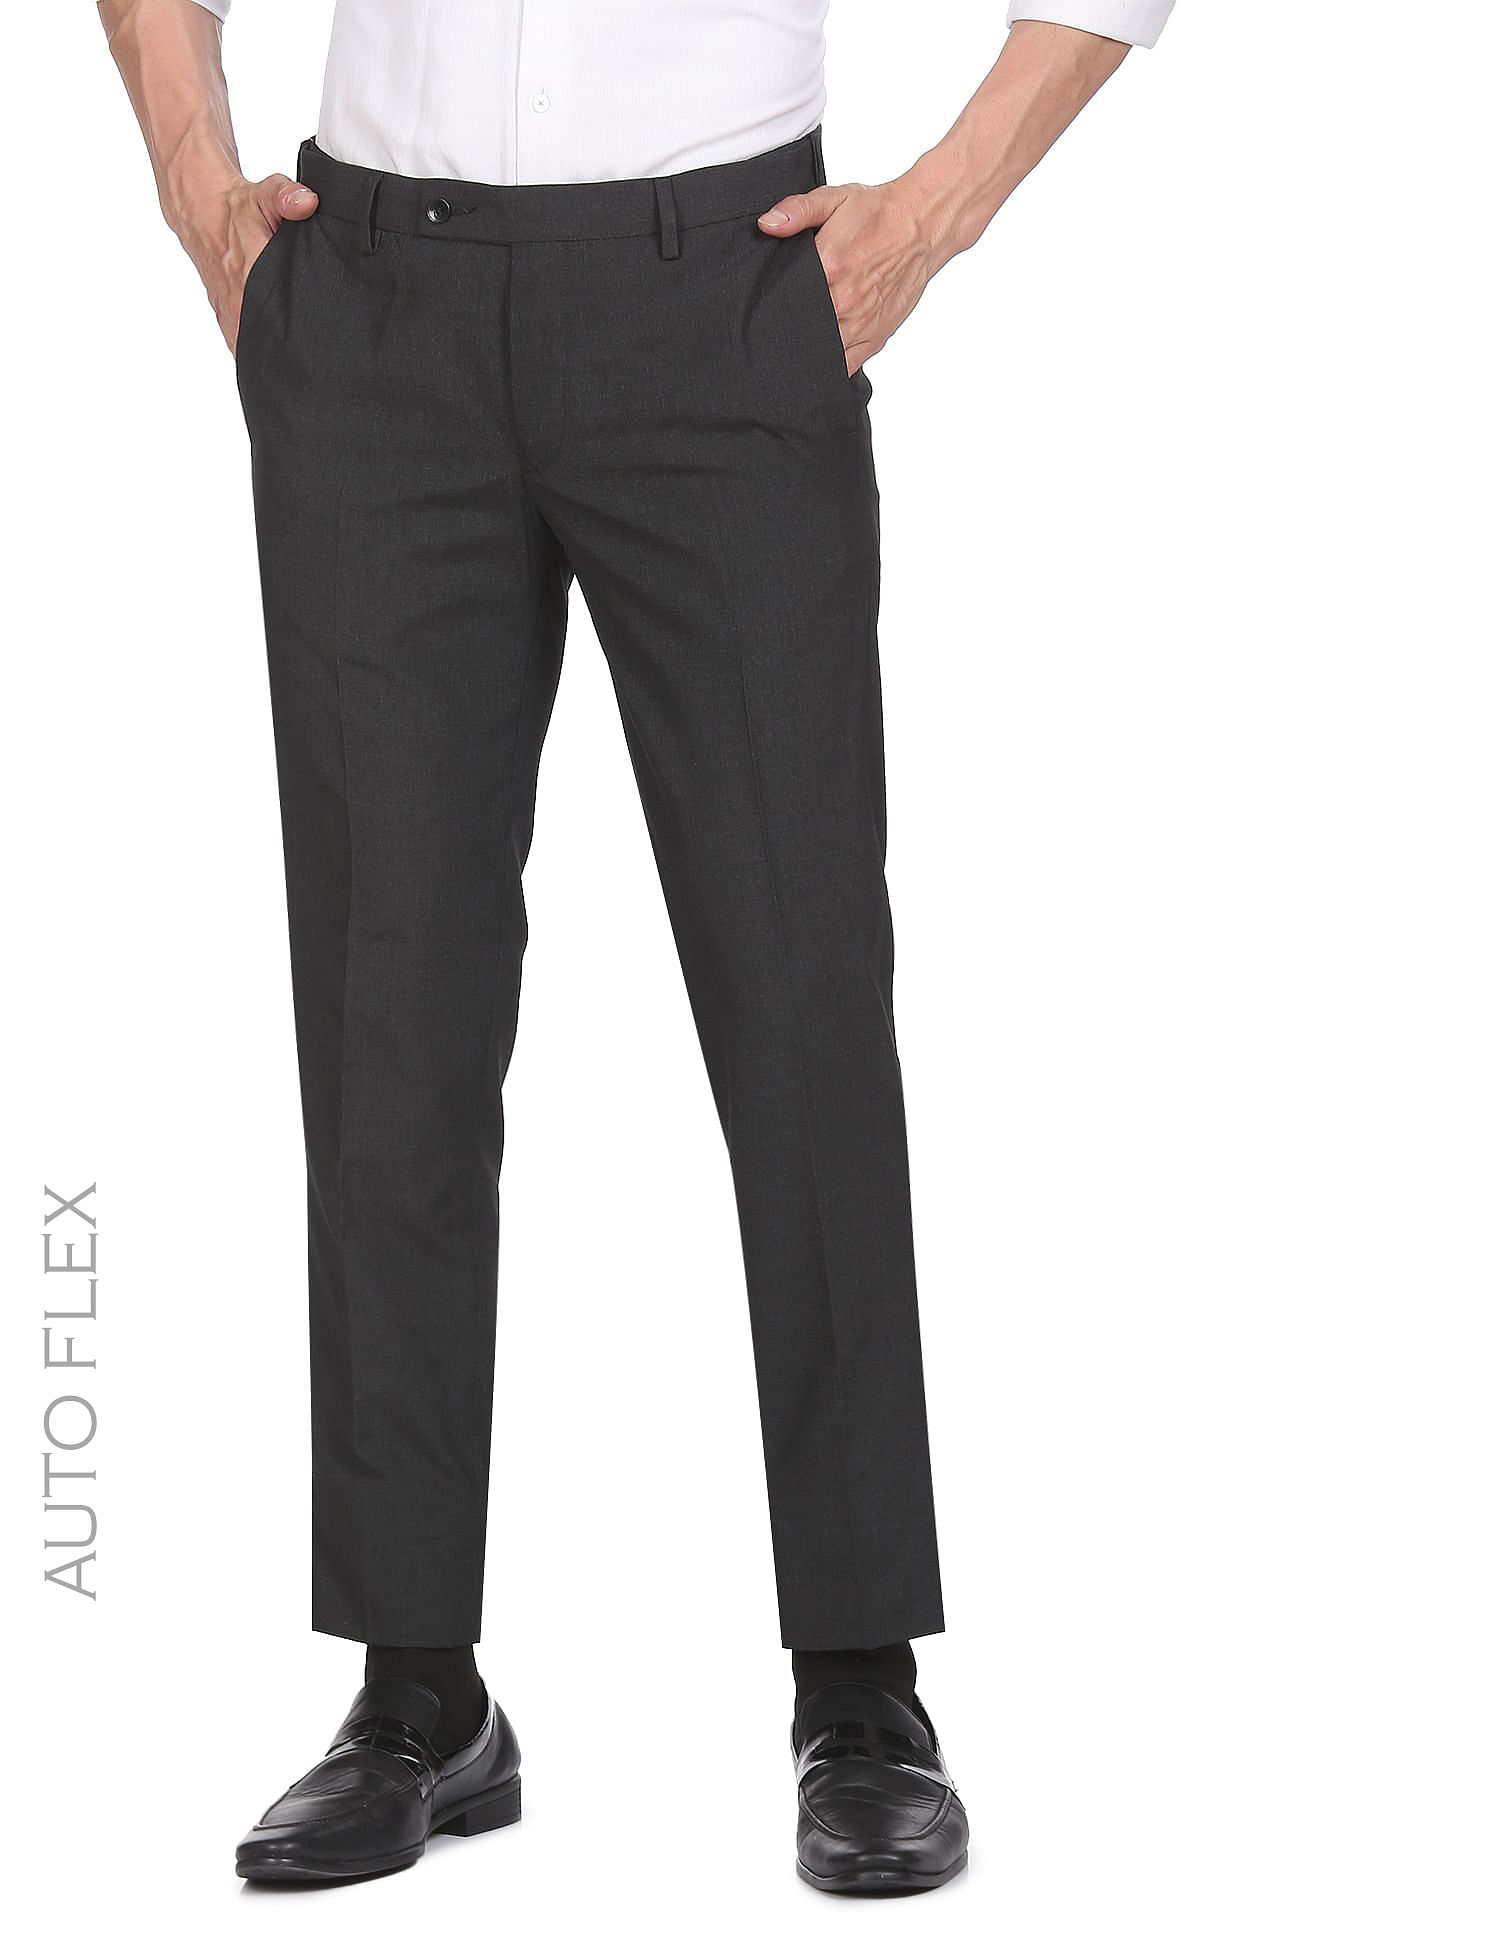 Buy Arrow Autoflex Jackson Super Slim Trousers - NNNOW.com-demhanvico.com.vn